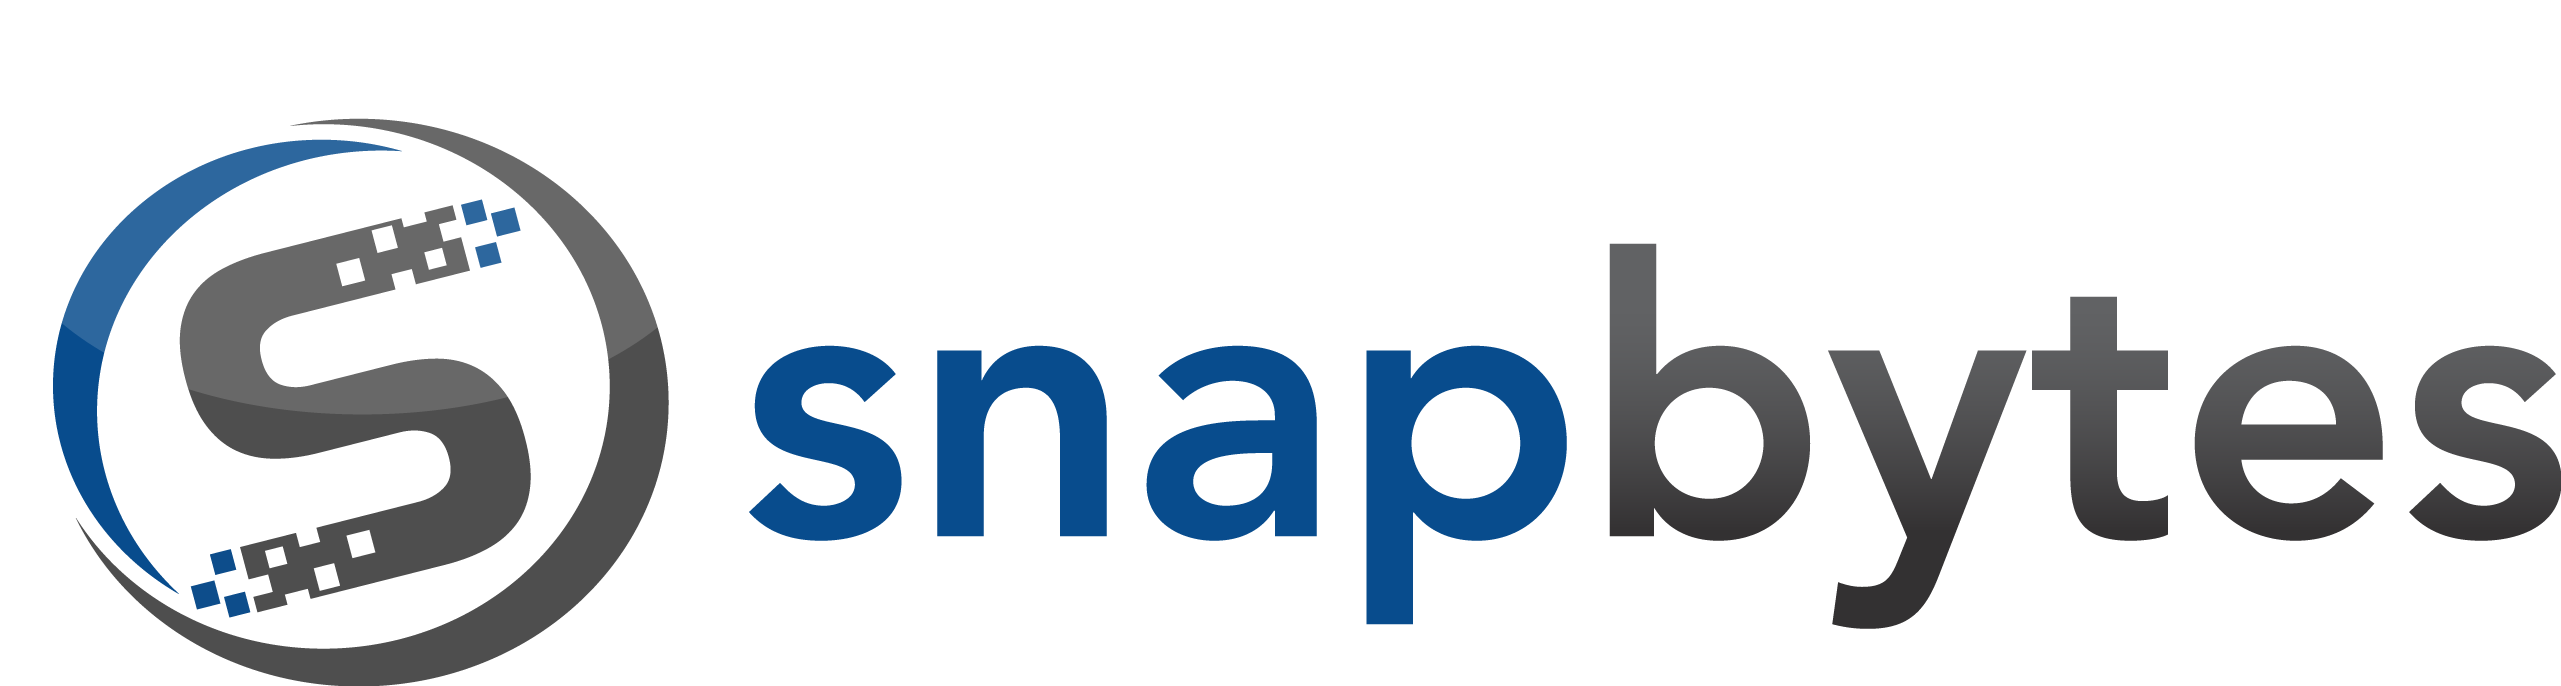 Snapbytes-Logo